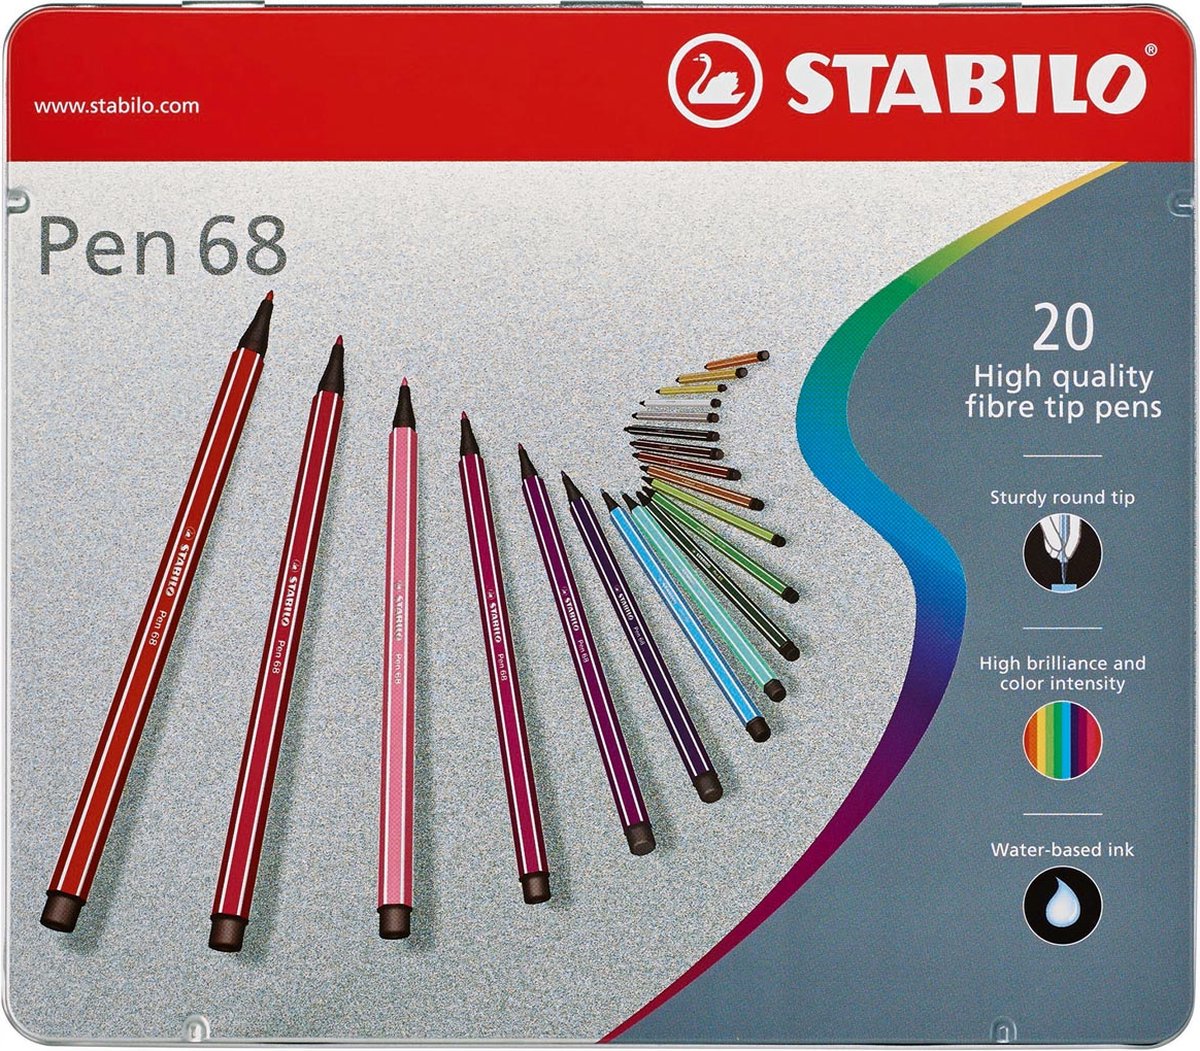 STABILO Pen 68 viltstift, metalen doos van 20 stiften in geassorteerde kleuren 5 stuks